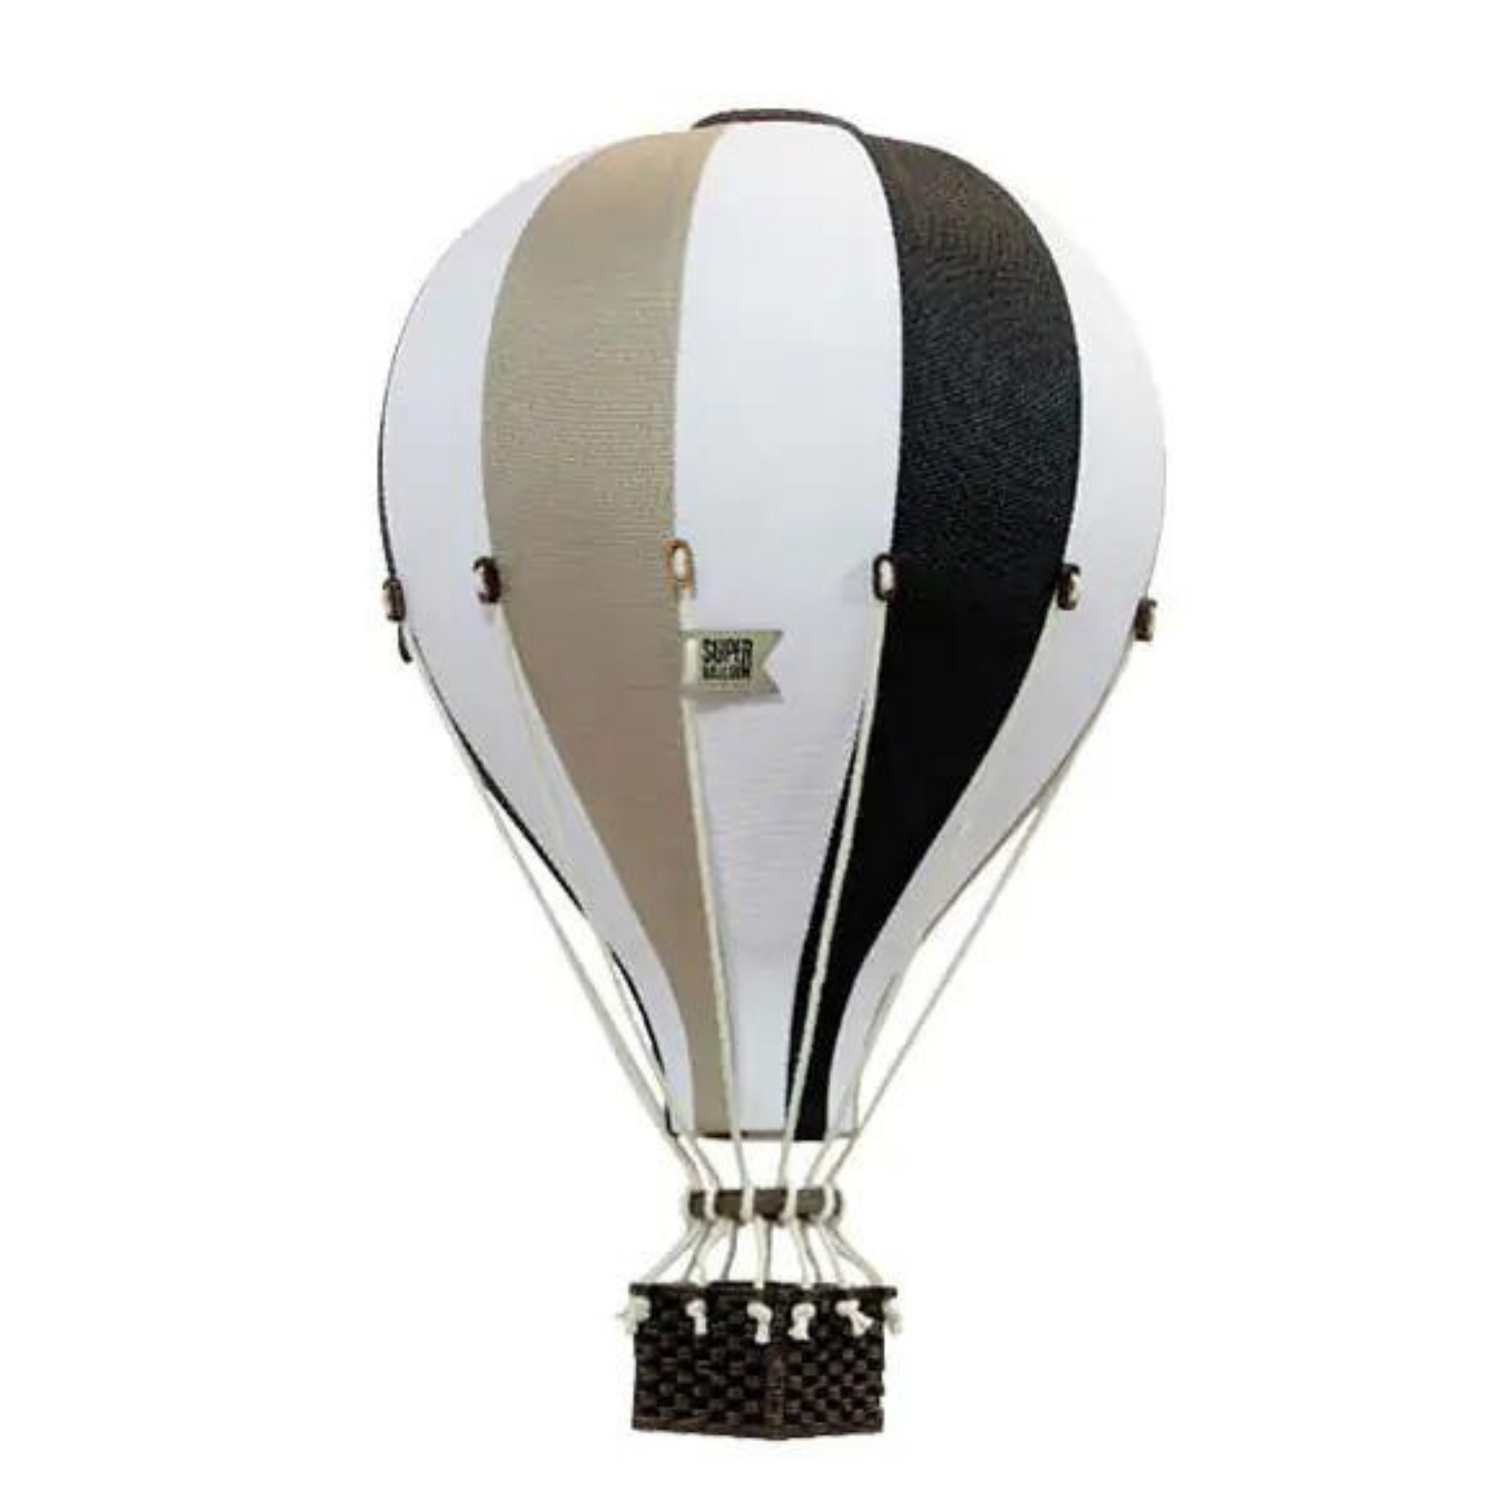 Super Balloon air balloon - Beige| Black | White